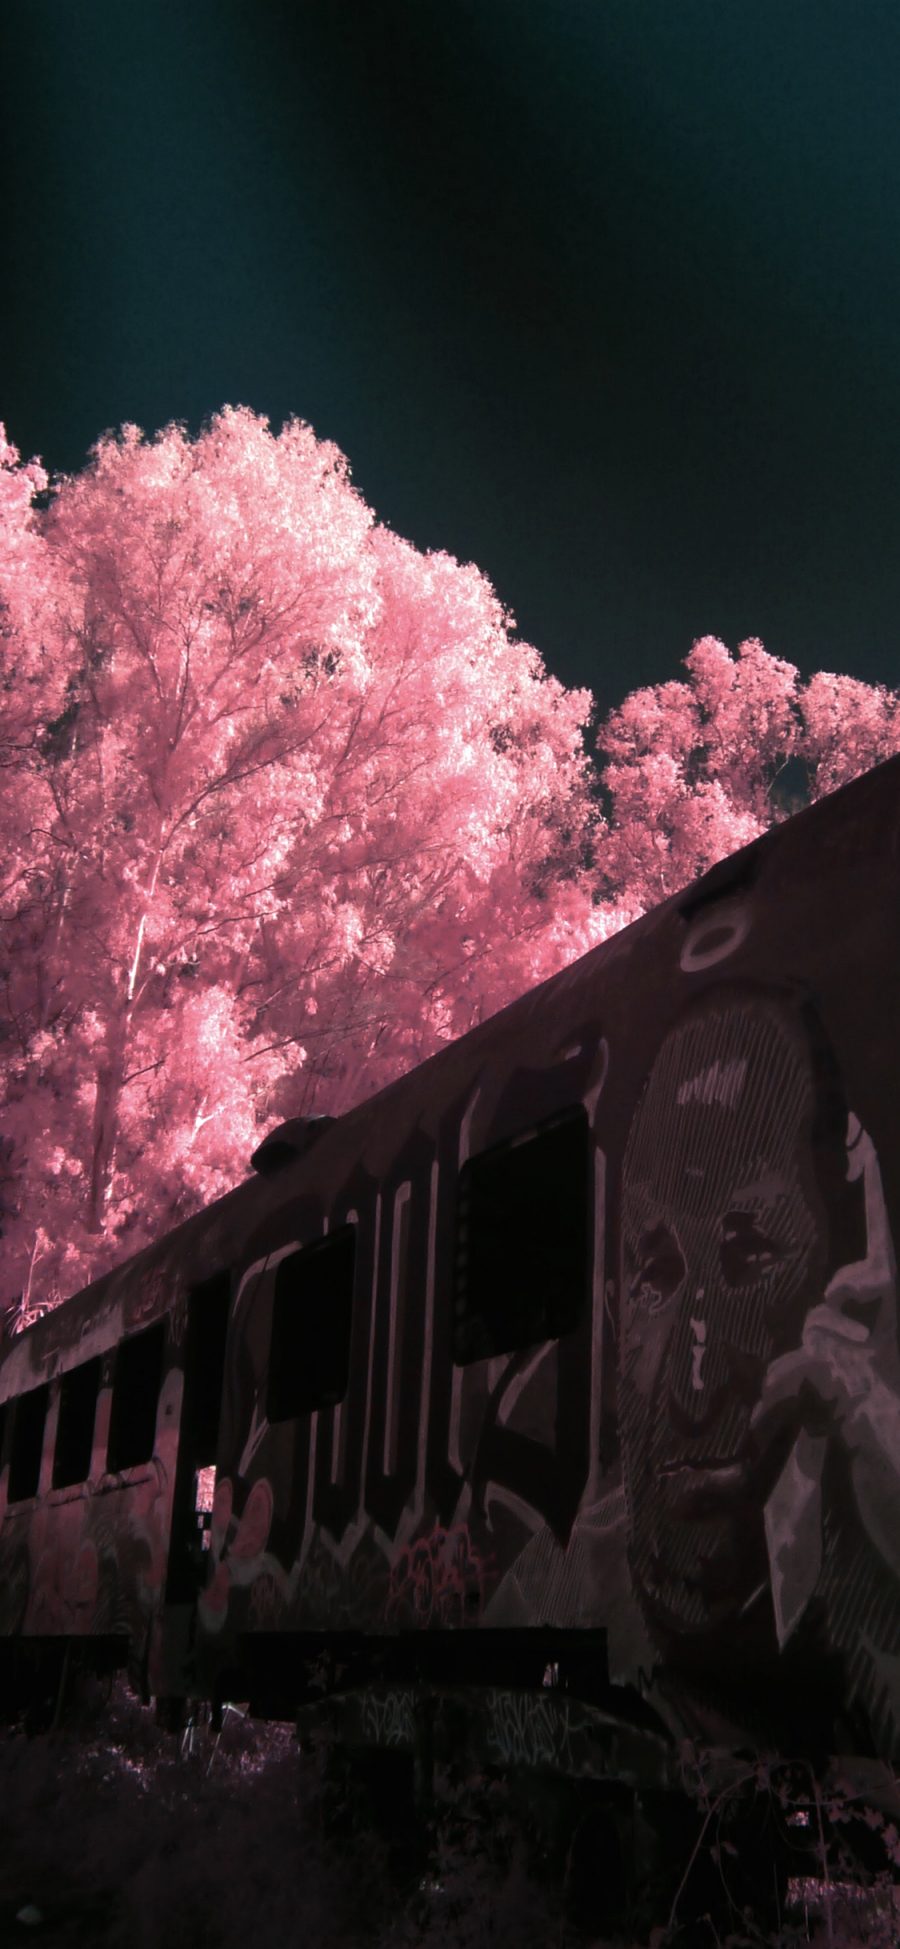 [2436×1125]列车 涂鸦 报废 树木 唯美 苹果手机壁纸图片